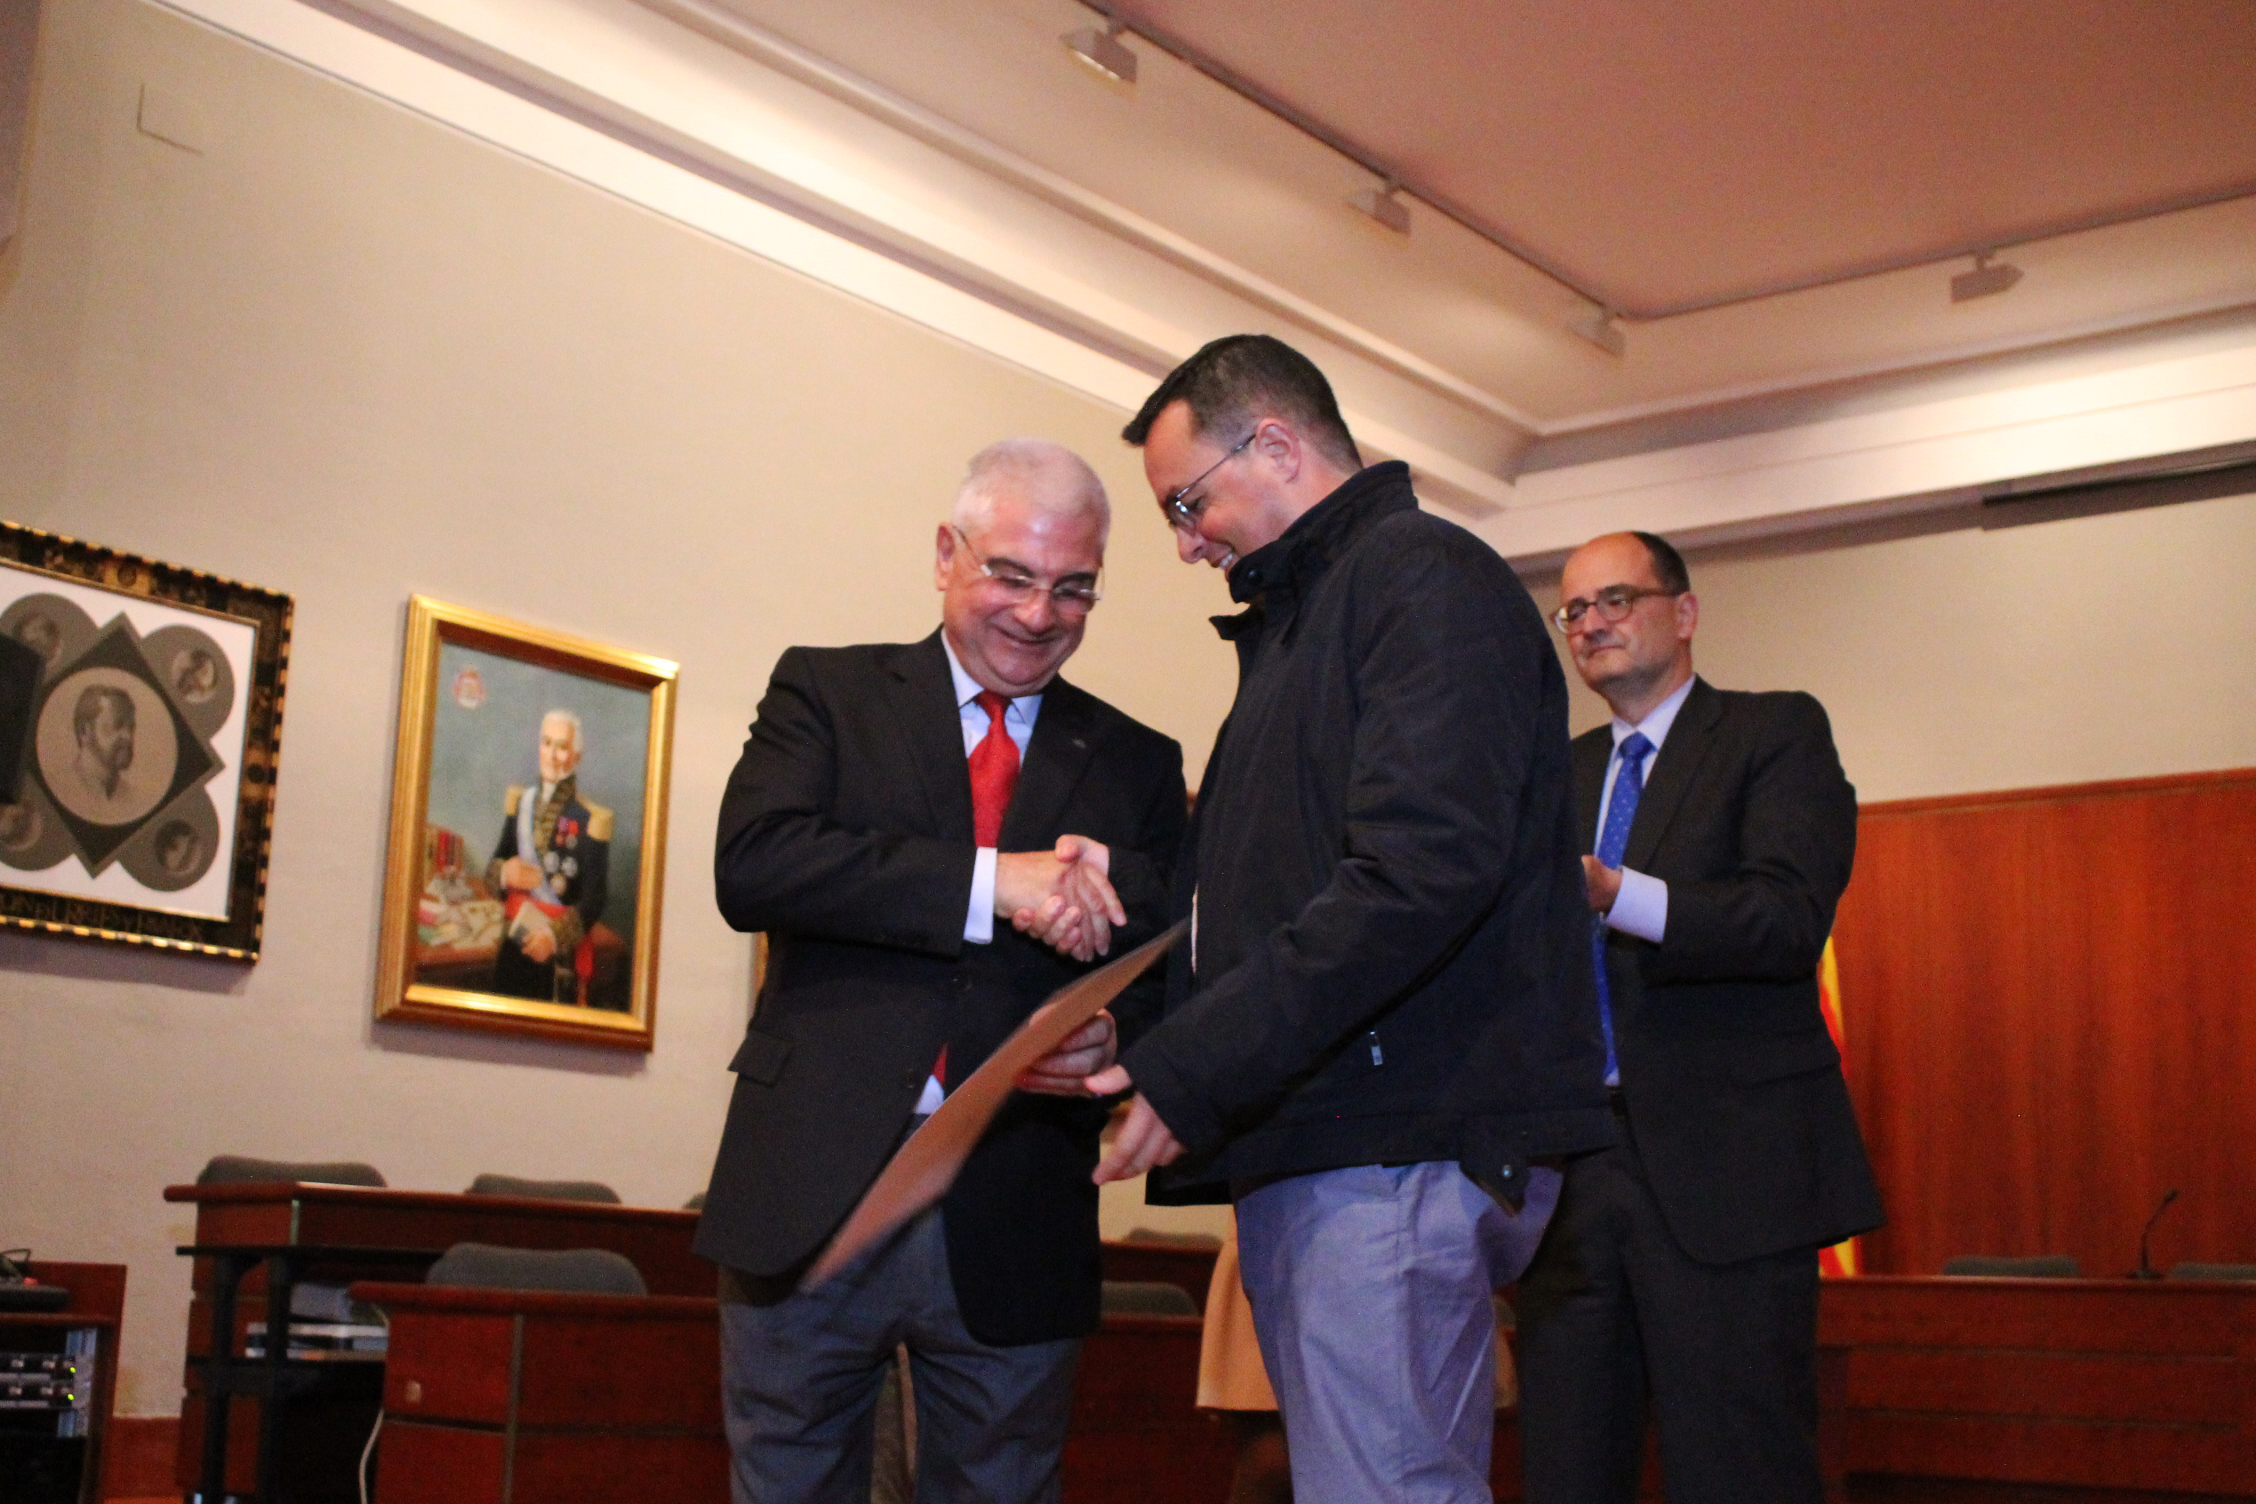 El presidente del Grupo San Valero, Don Ángel García de Jalón Comet, entregando el diploma al ganador de retrato del II Premio de Fotografia Jalón Ángel, José Luis Moreno.